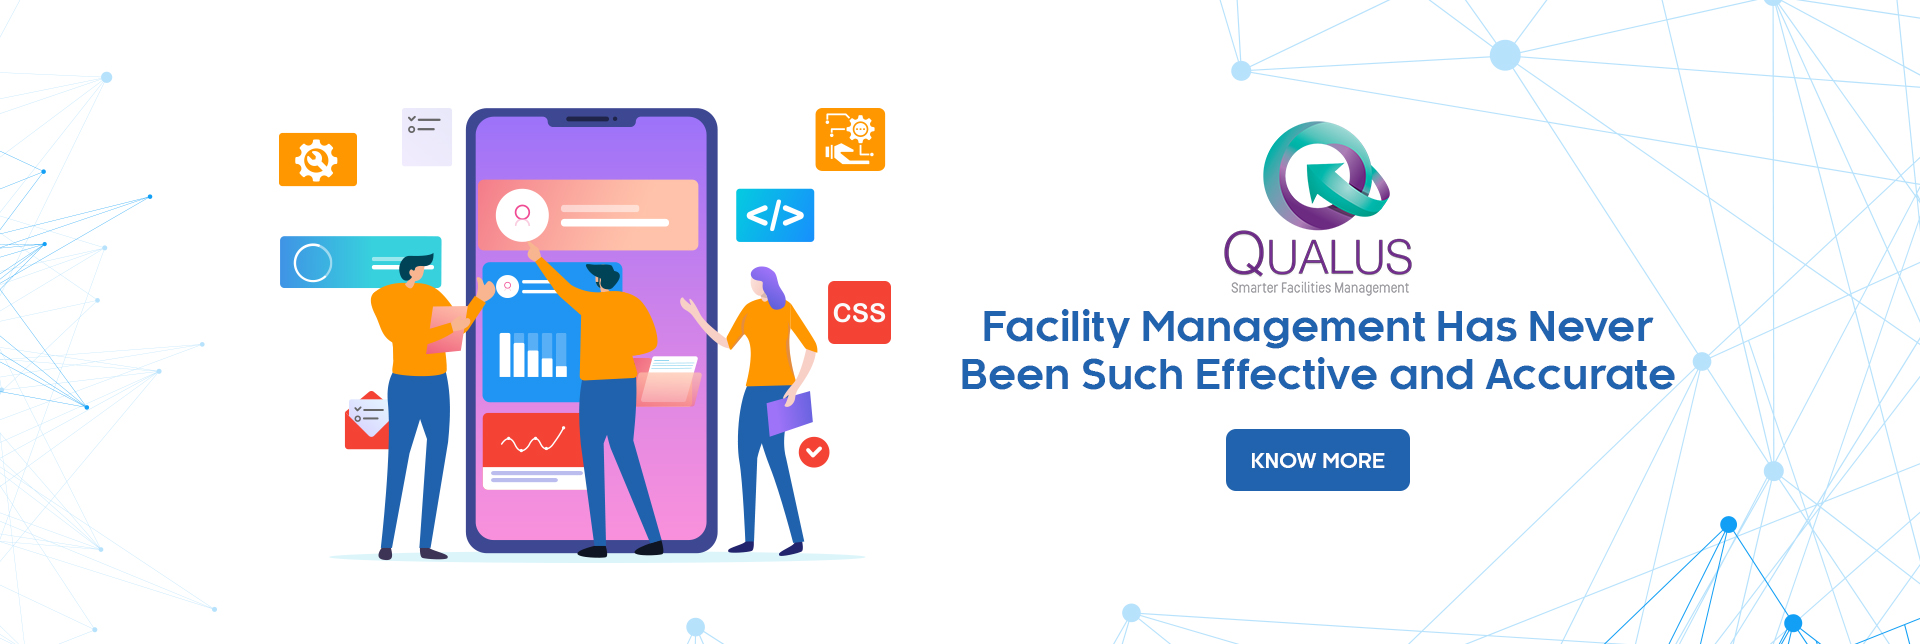 facilities management services- Qualus